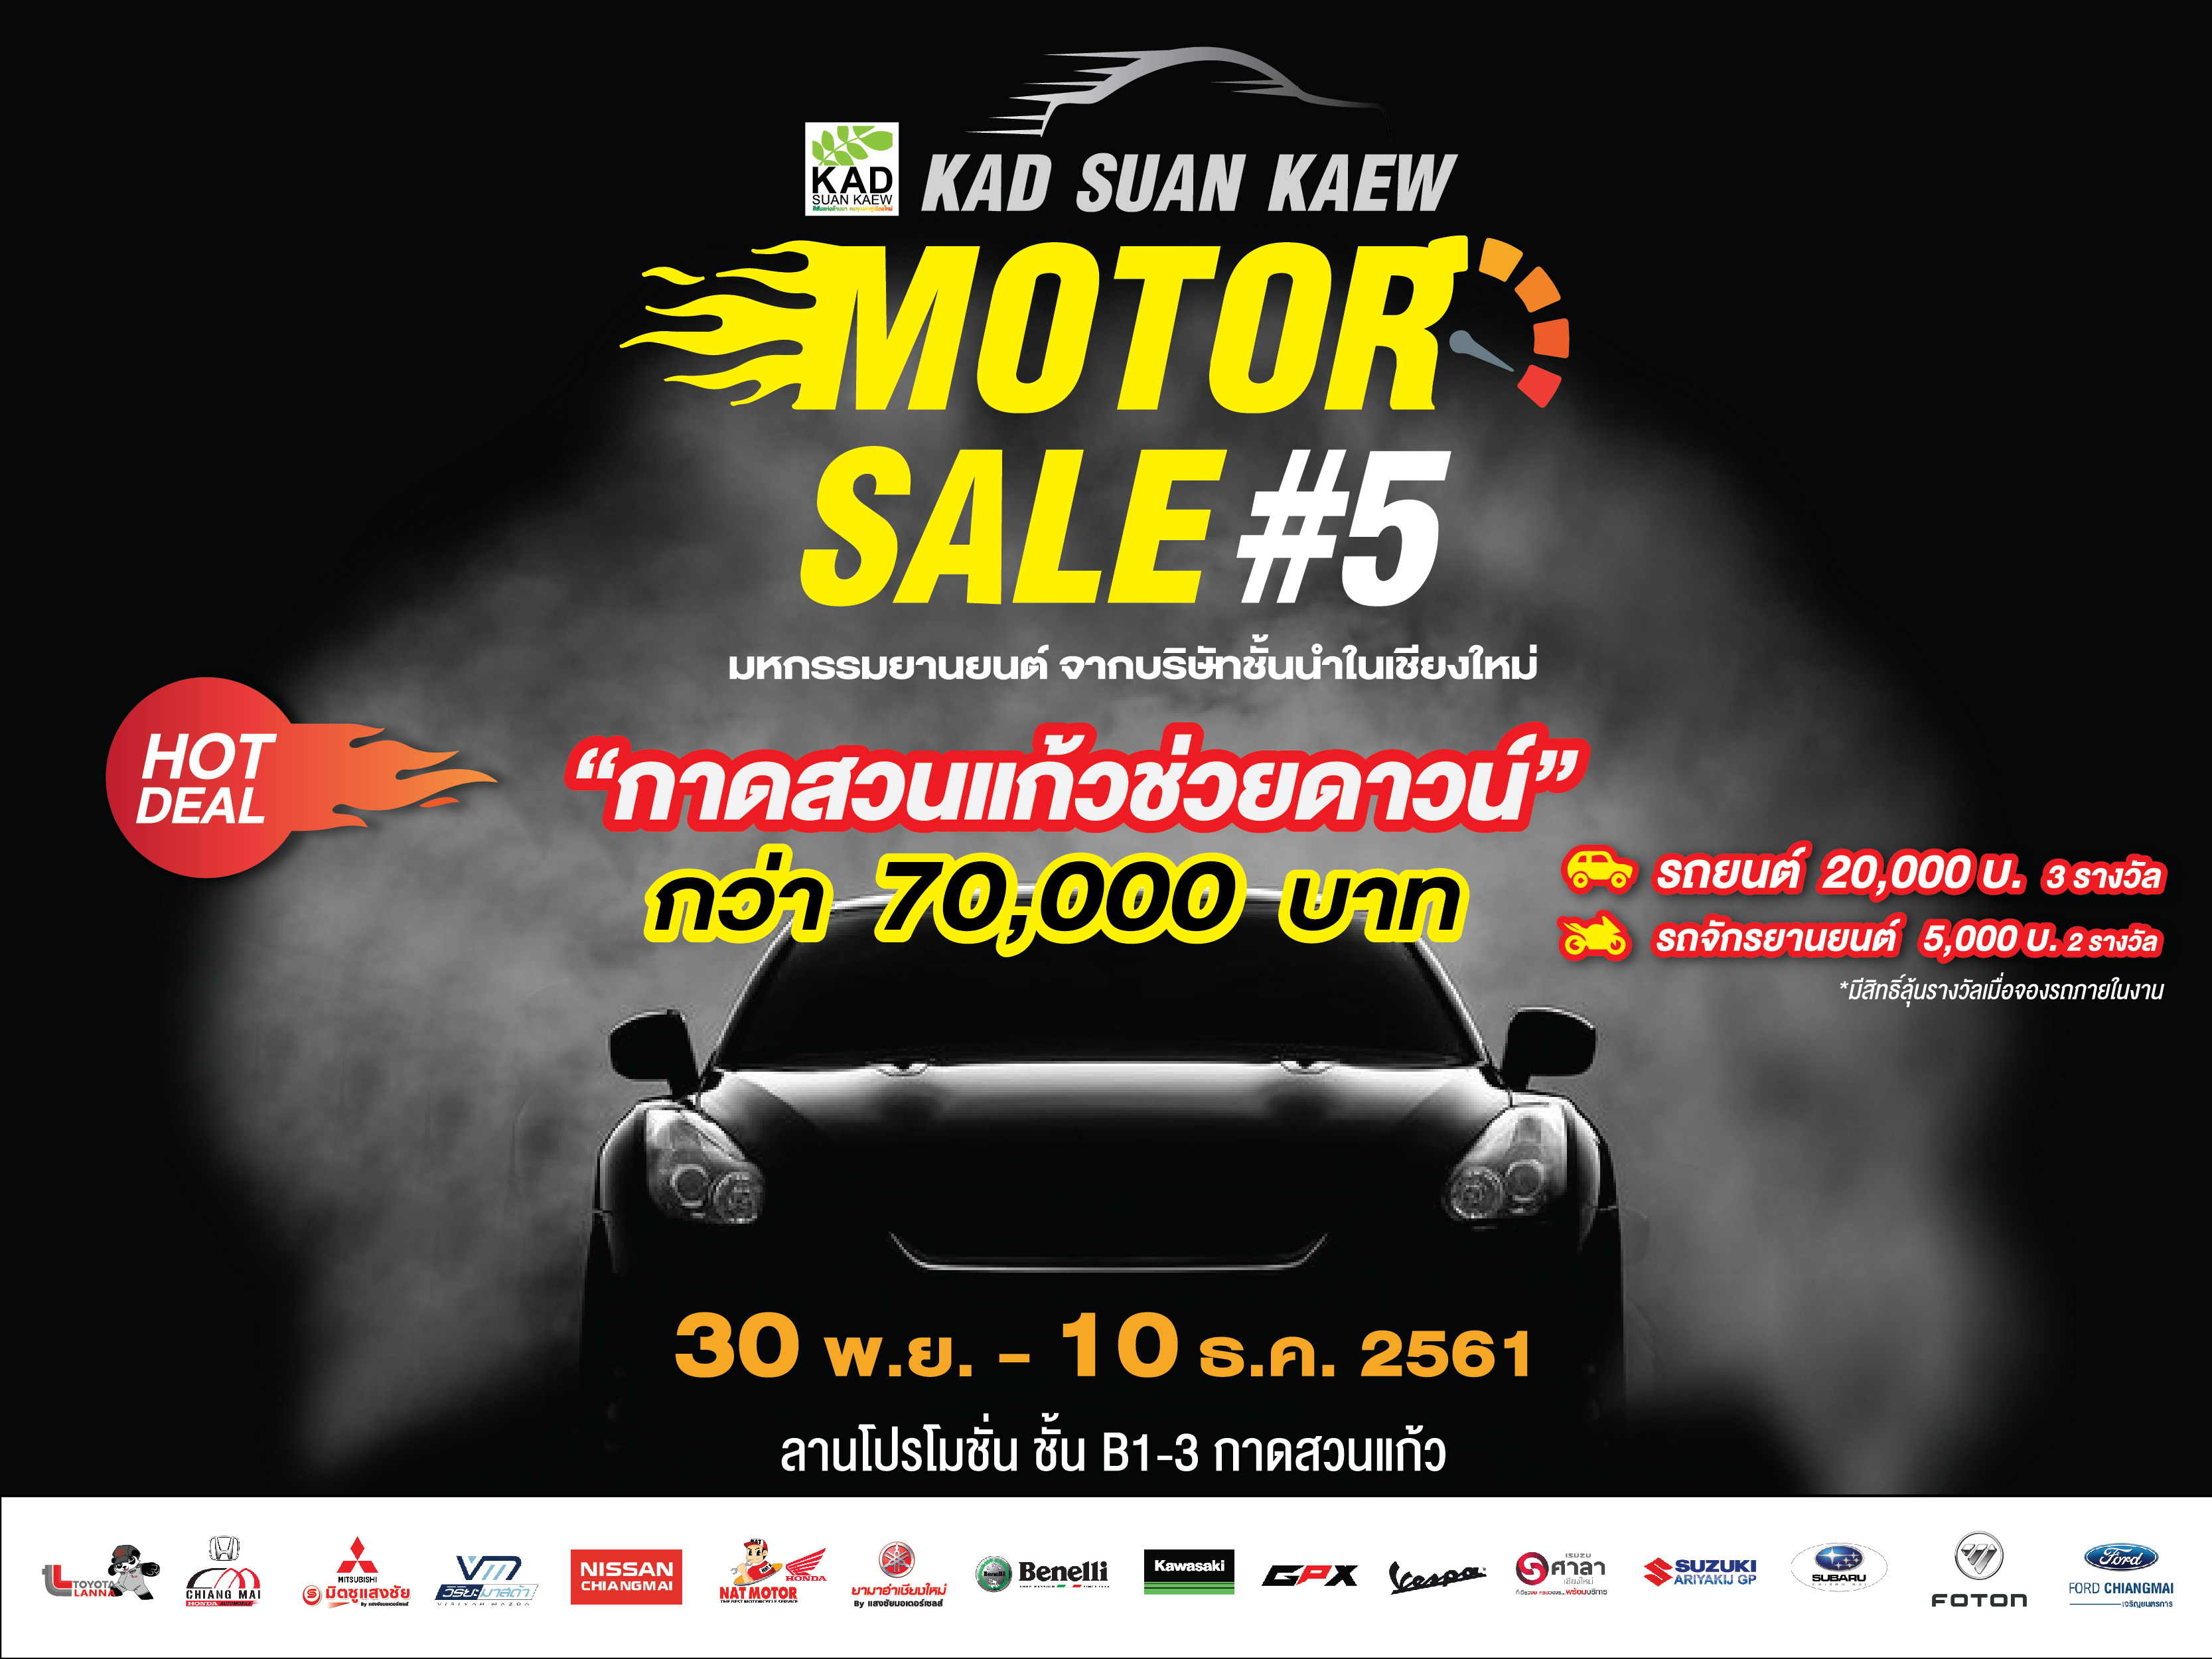 กลับมาอีกครั้ง “Kad Suan Kaew Motor Sale  ครั้งที่ 5” พร้อมโปรโมชั่นกาดสวนแก้วช่วยดาวน์